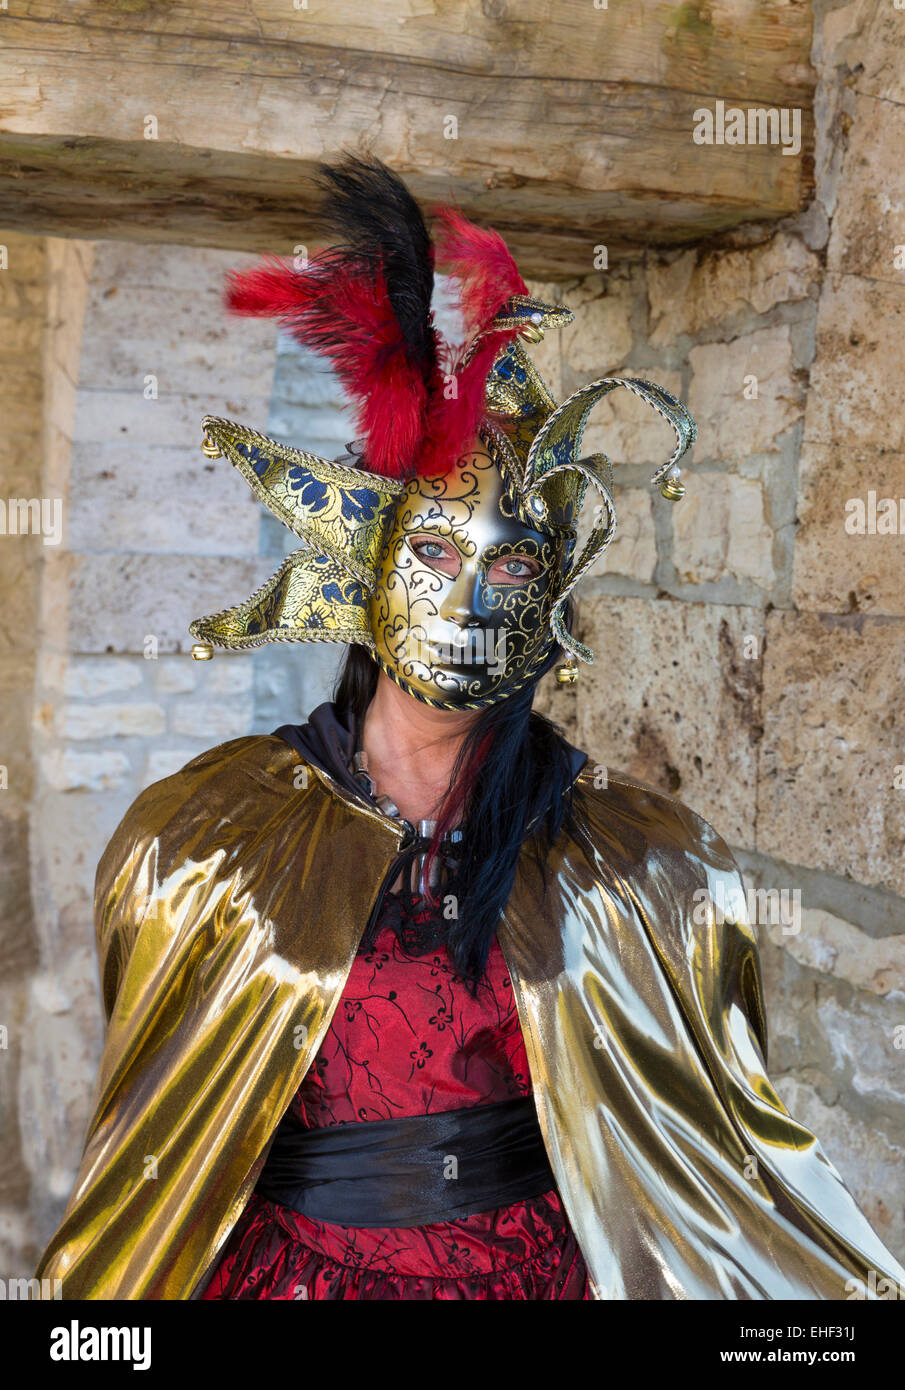 Frau mit Venezianische Maske und Kostüm, Fasching, Karneval Foto Stock